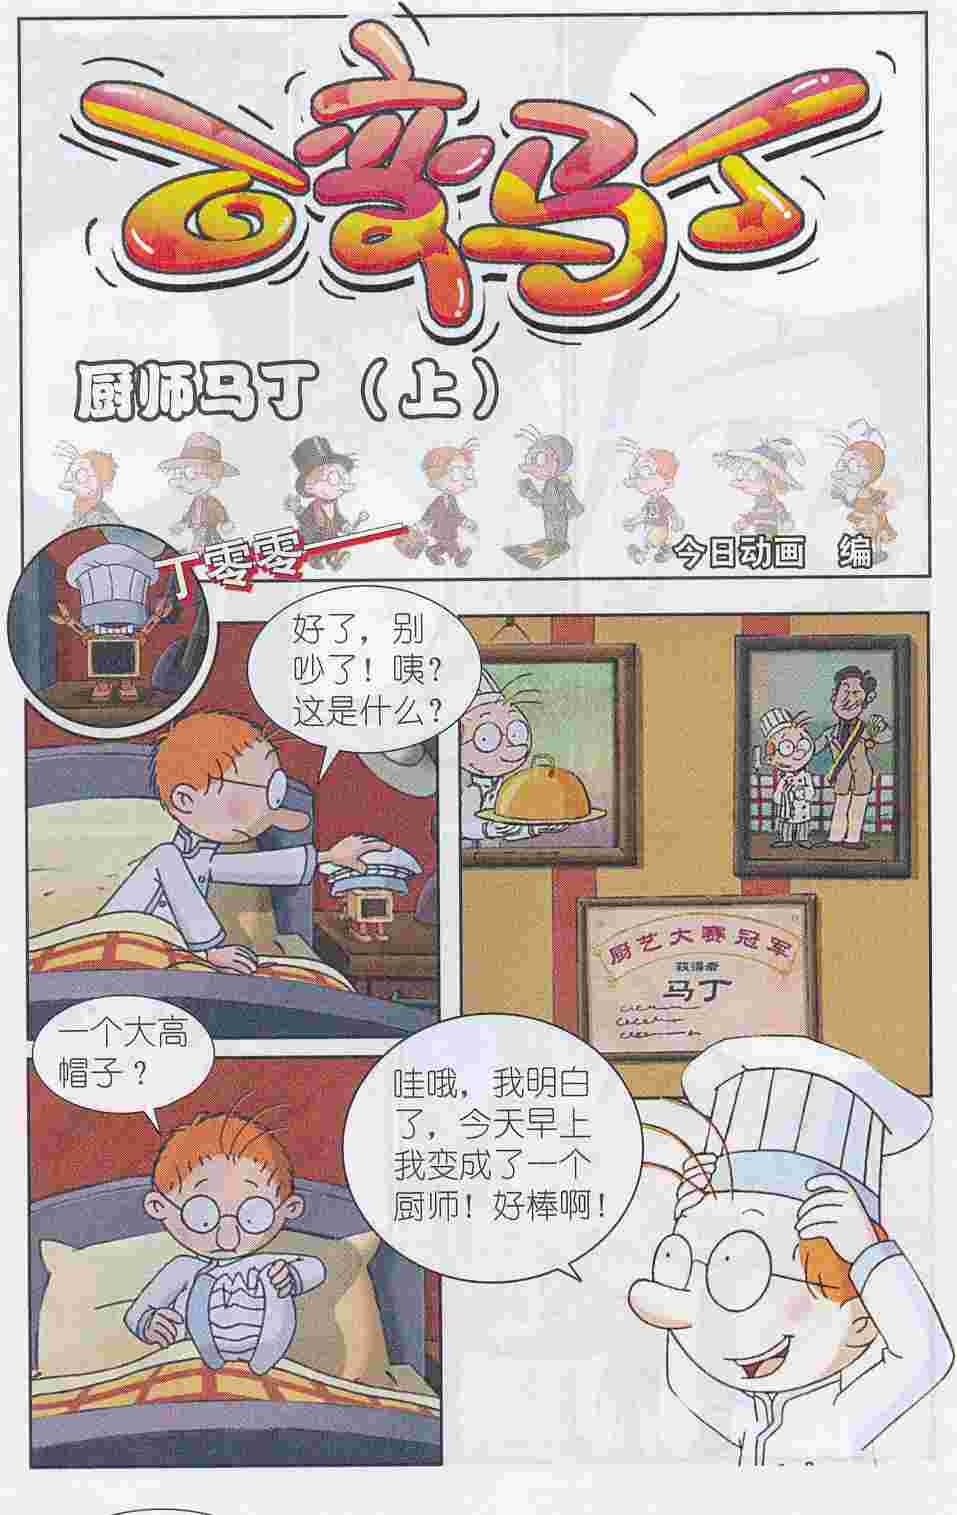 百变马丁韩国漫画漫免费观看免费